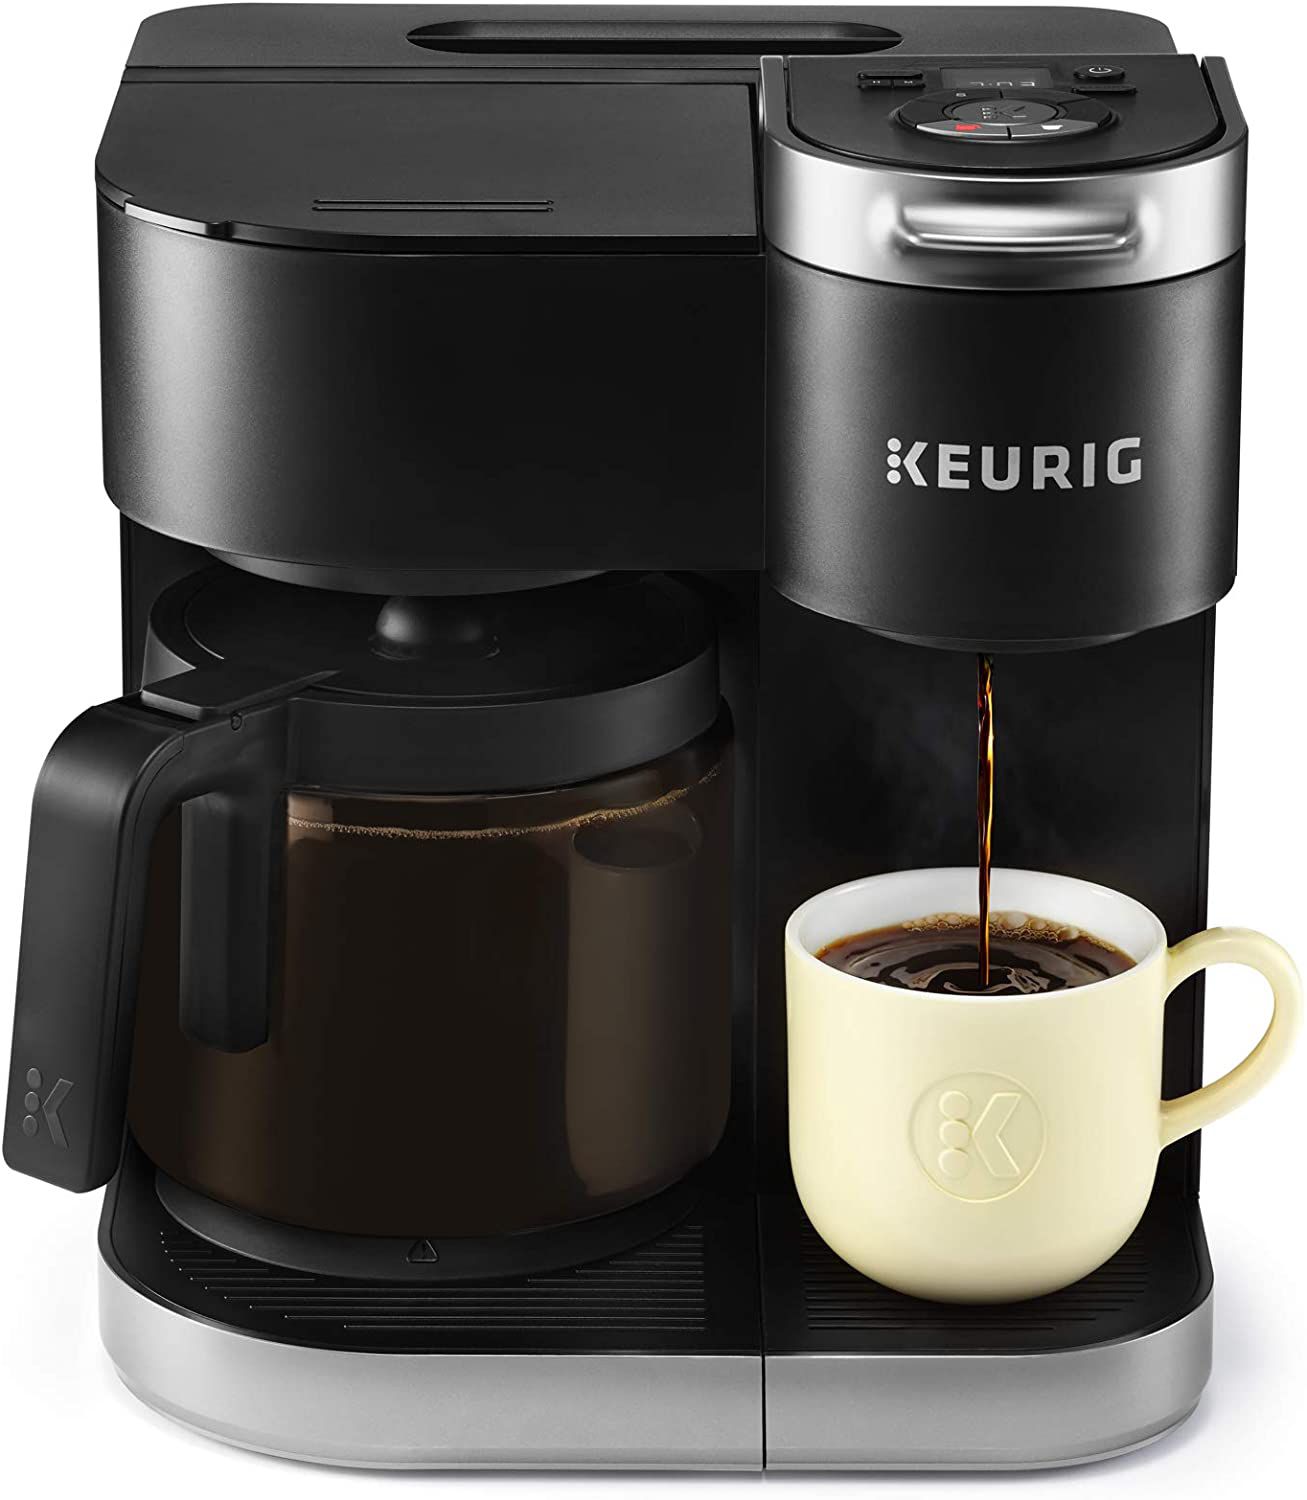 Keurig-K-Duo-Coffee-Maker 